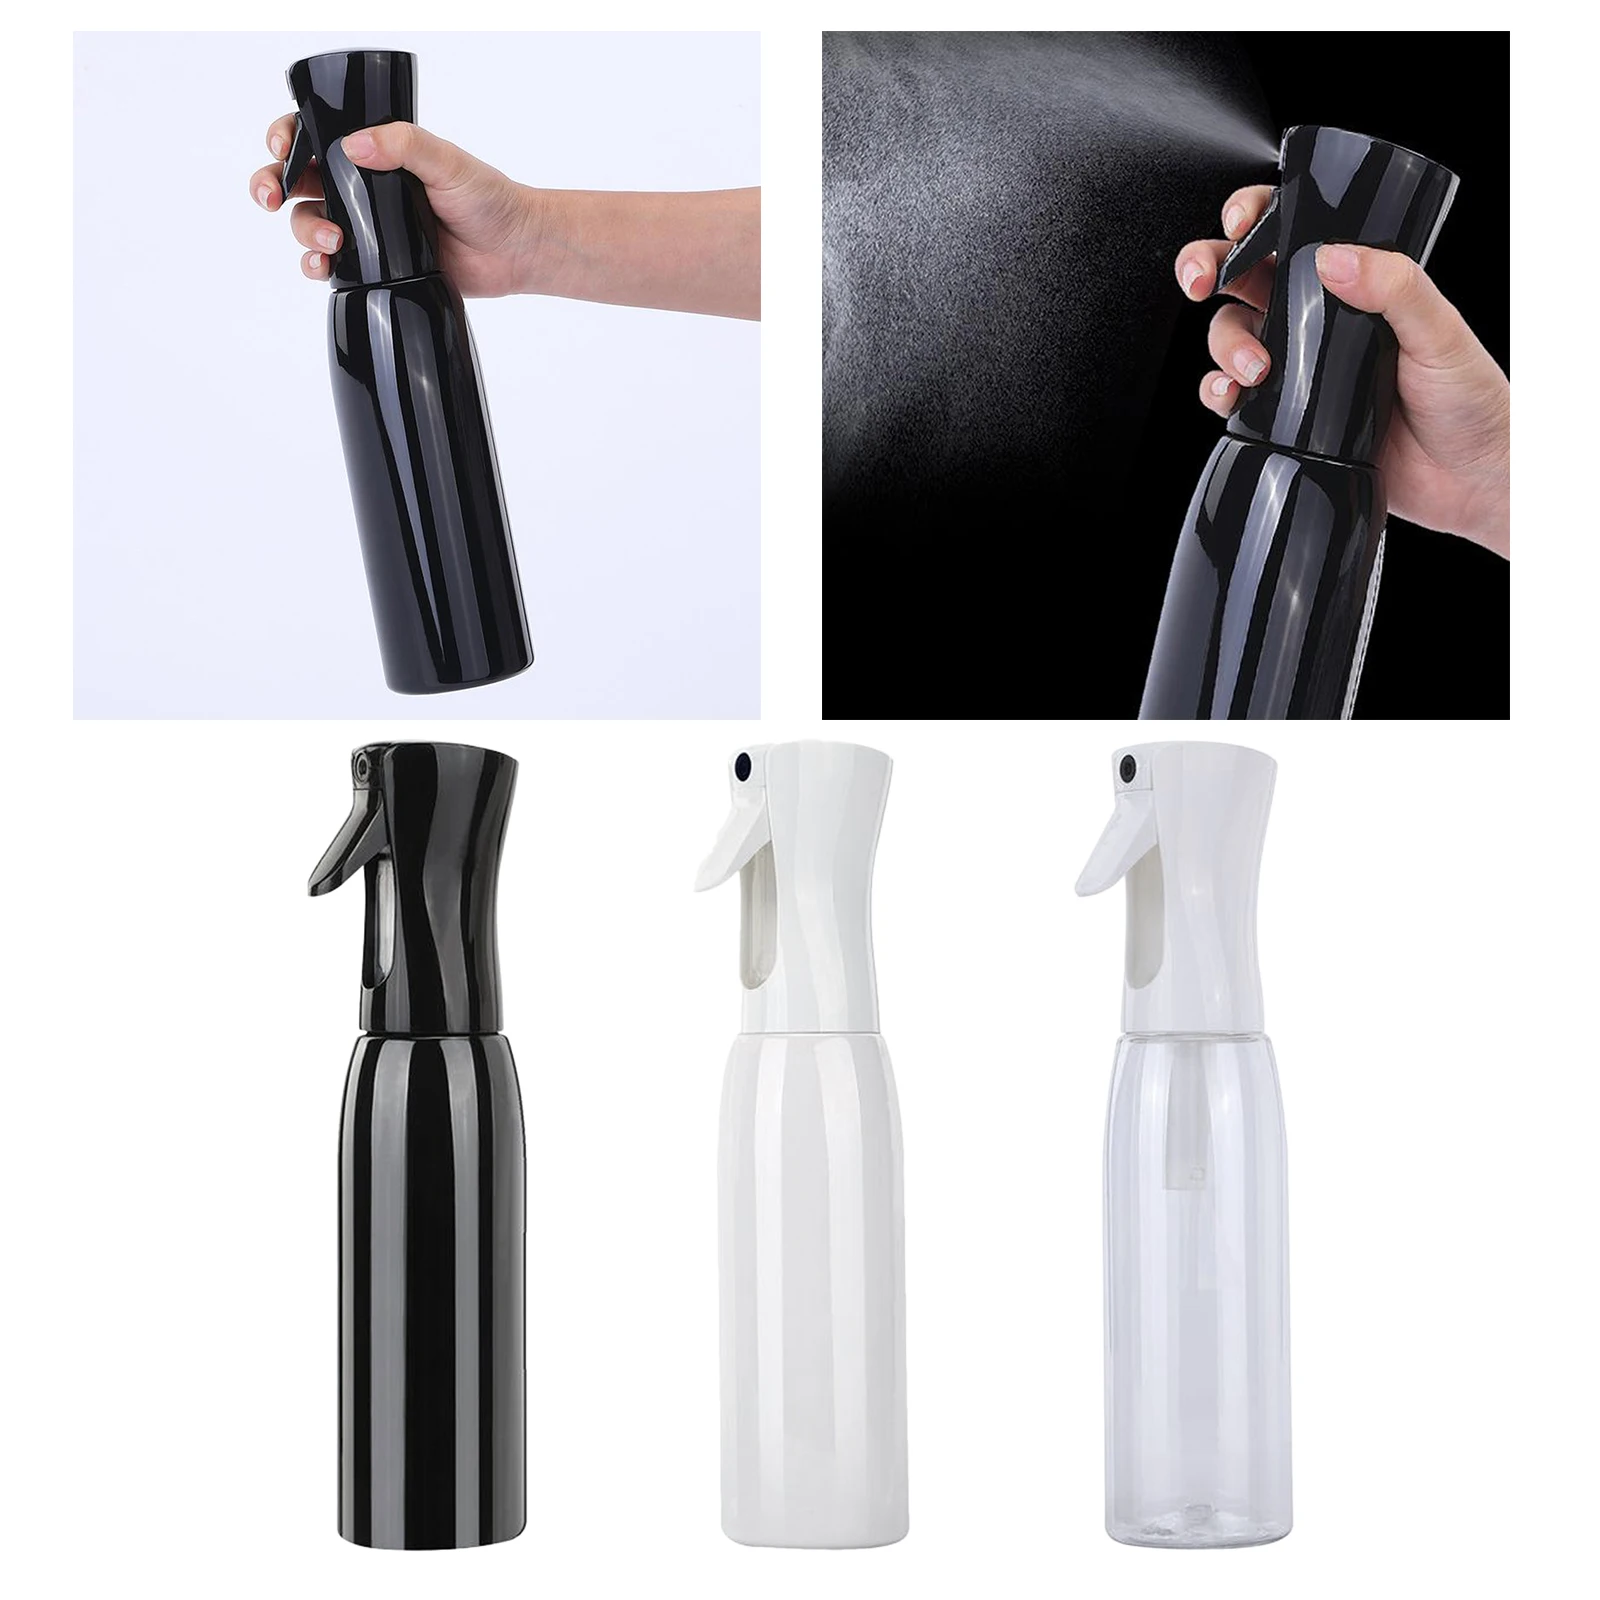 

500ml Spray Bottle Trigger Refillable Misting Spray Bottles Hairdressing Plant Flowers Water Sprayer for Hair Styling Salon